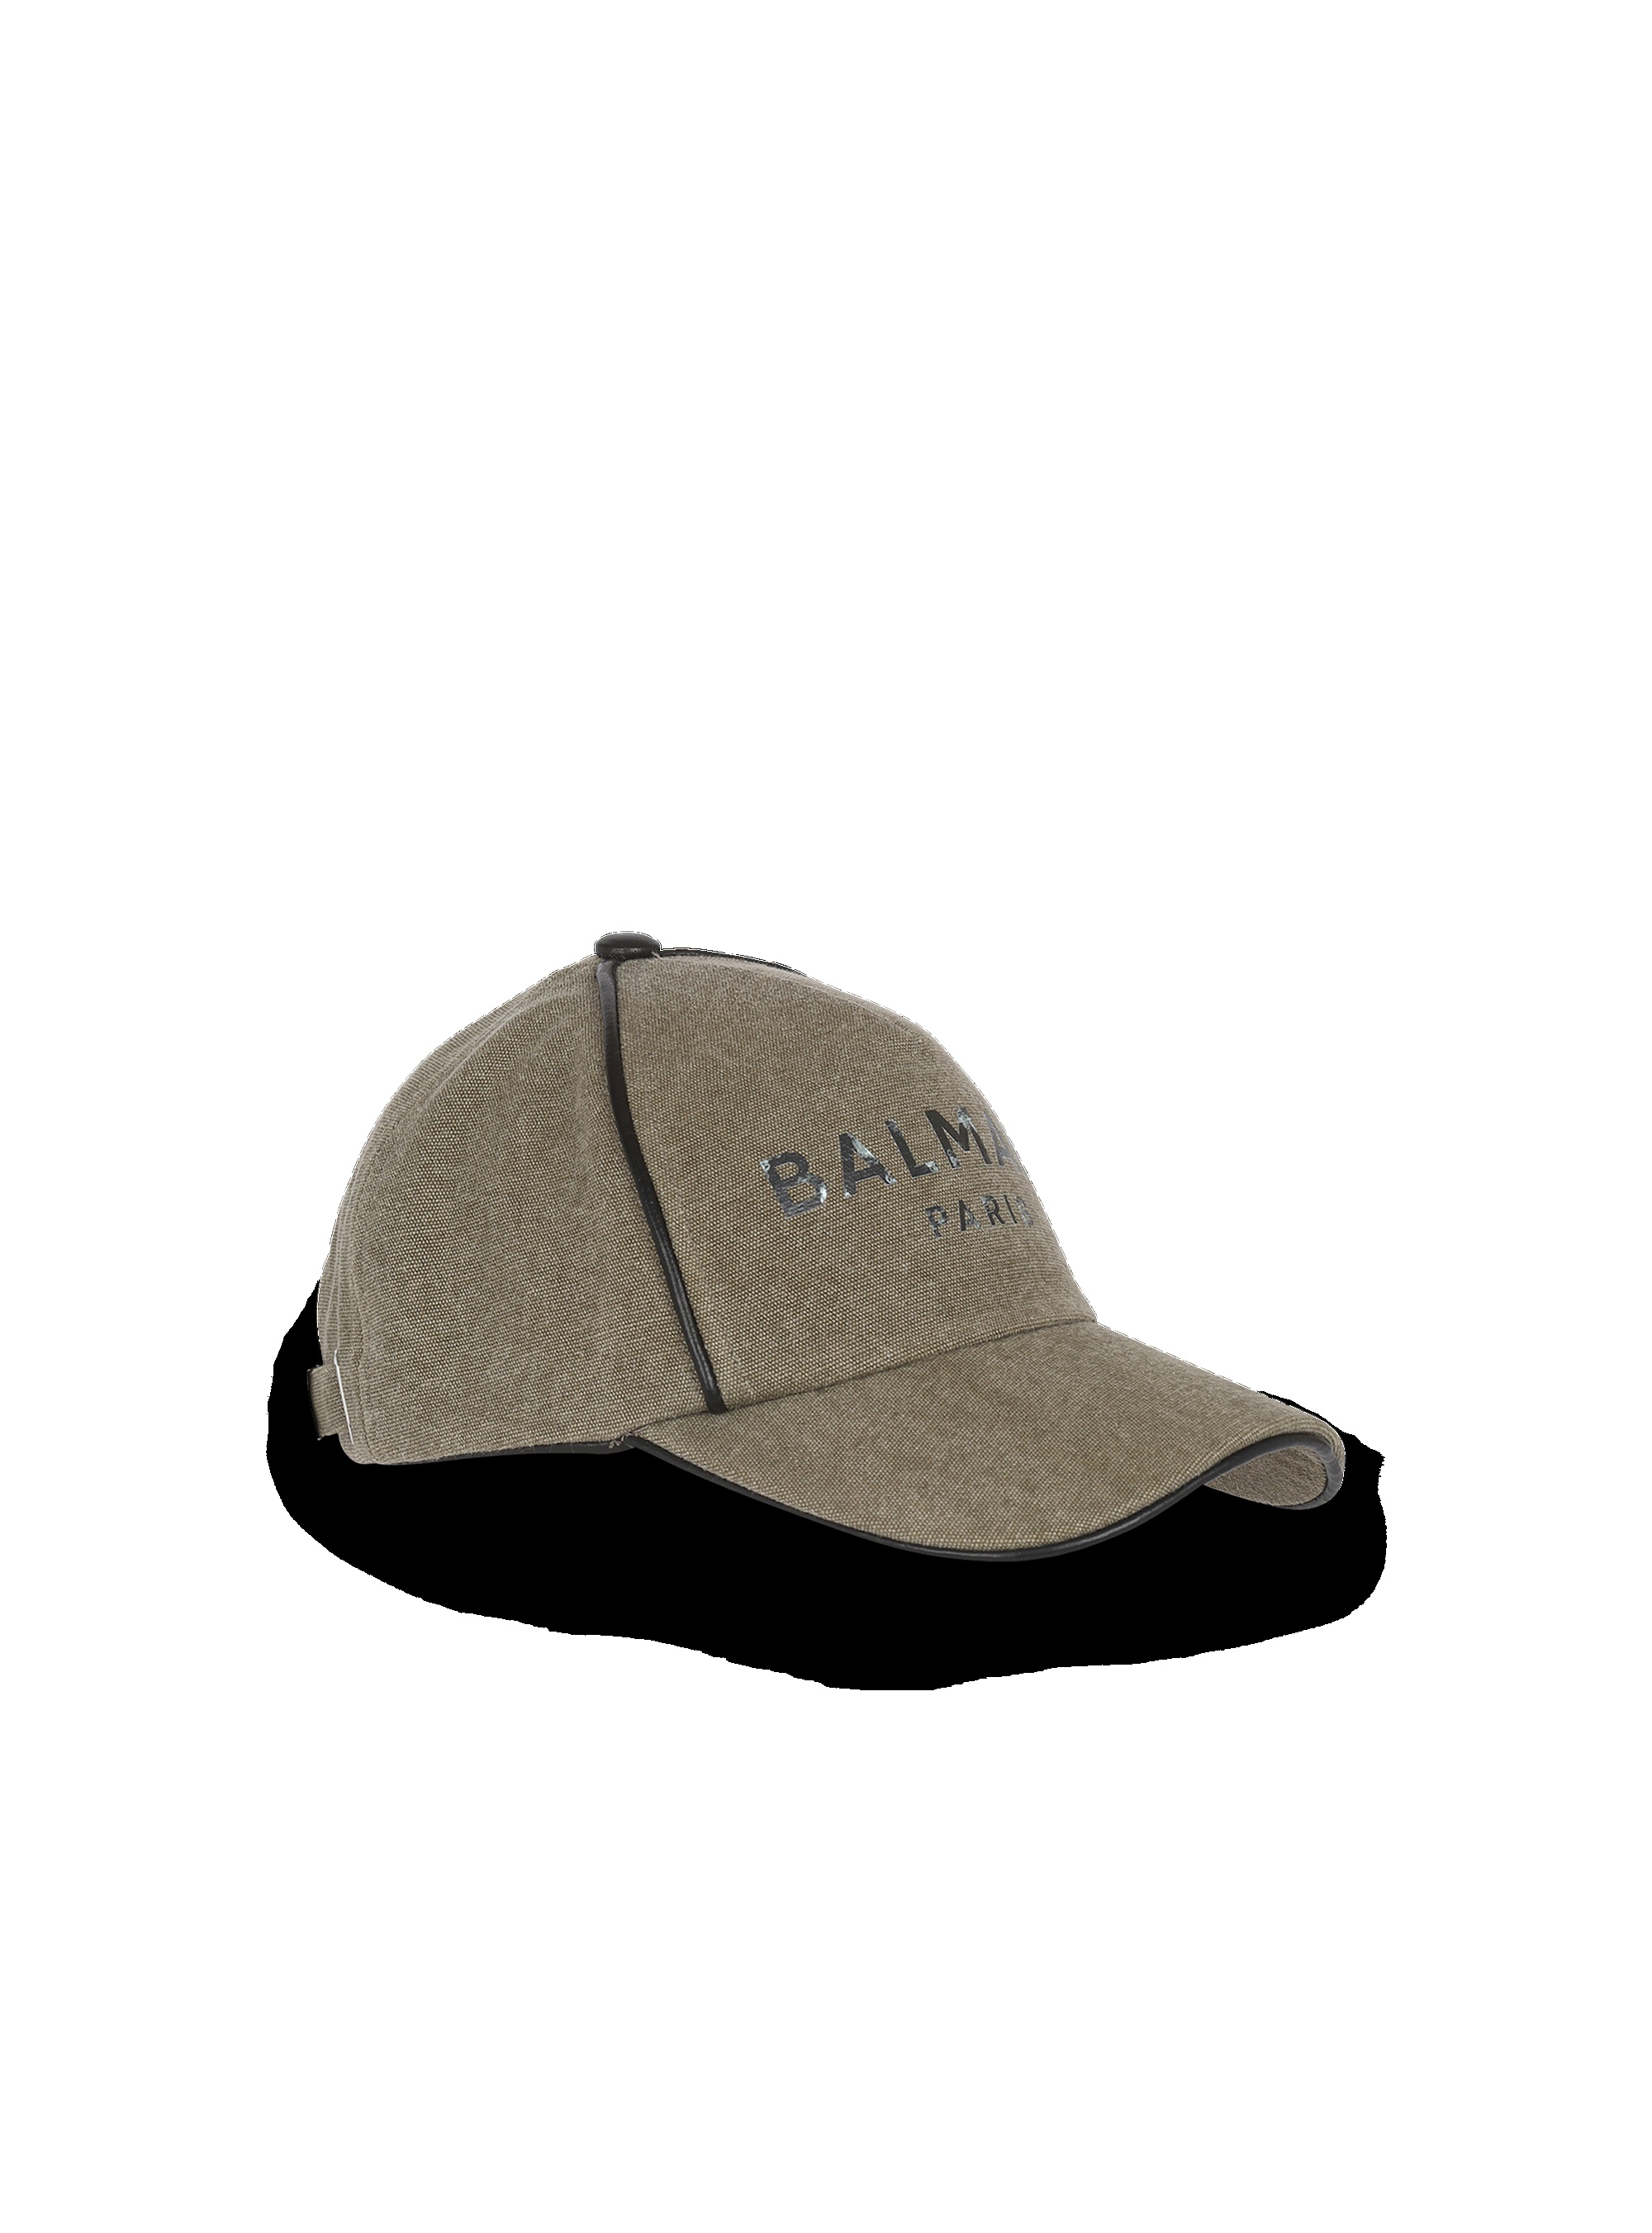 Cotton canvas cap with Balmain Paris logo - 3